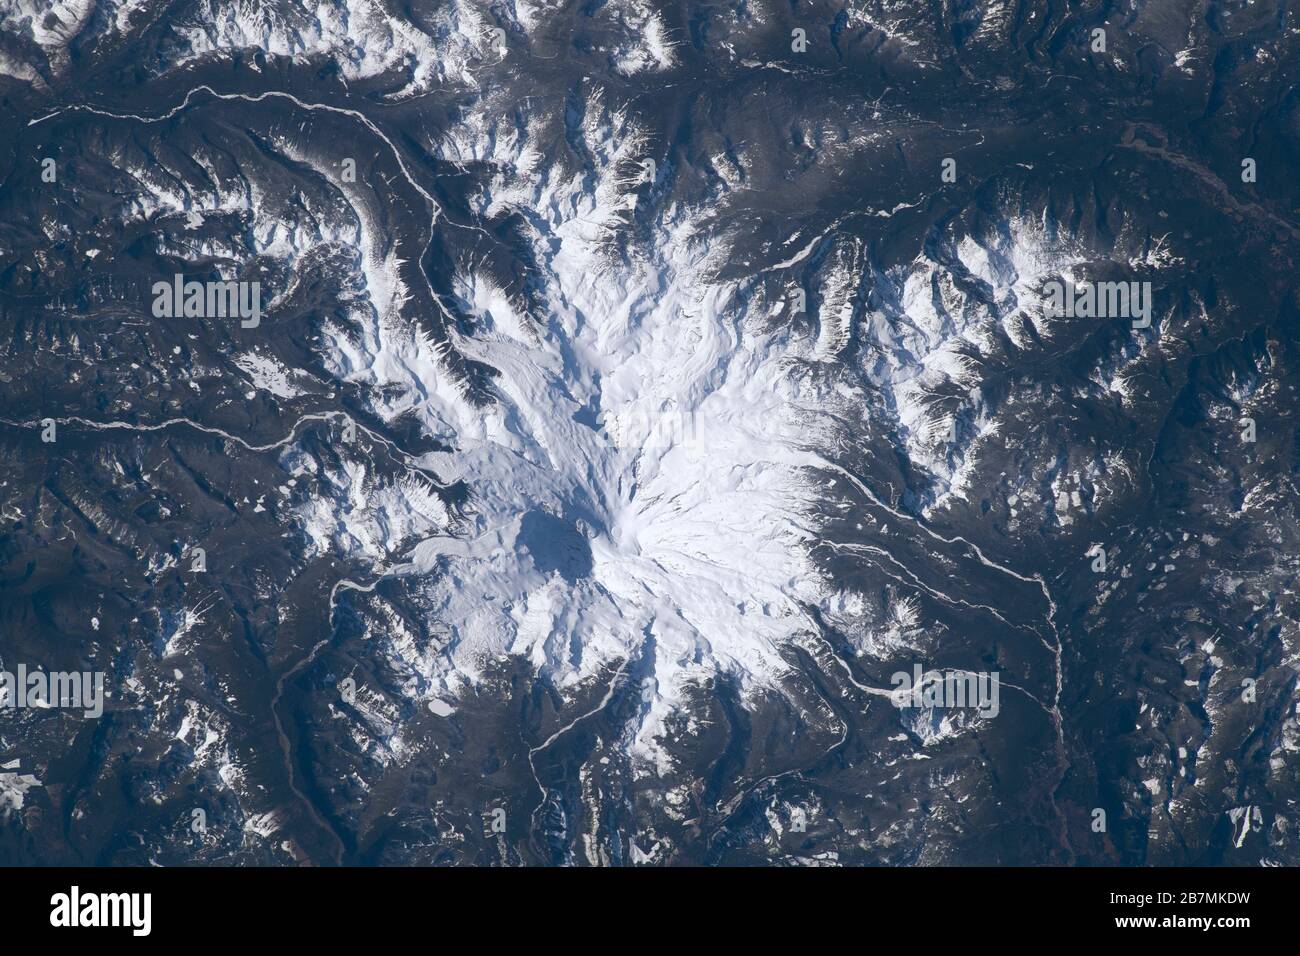 MOUNT RAINIER, USA - 19. Februar 2020 - Mount Rainier wird von der Internationalen Raumstation aus gesehen, als er 266 Meilen über Washington State USA umkreist Stockfoto